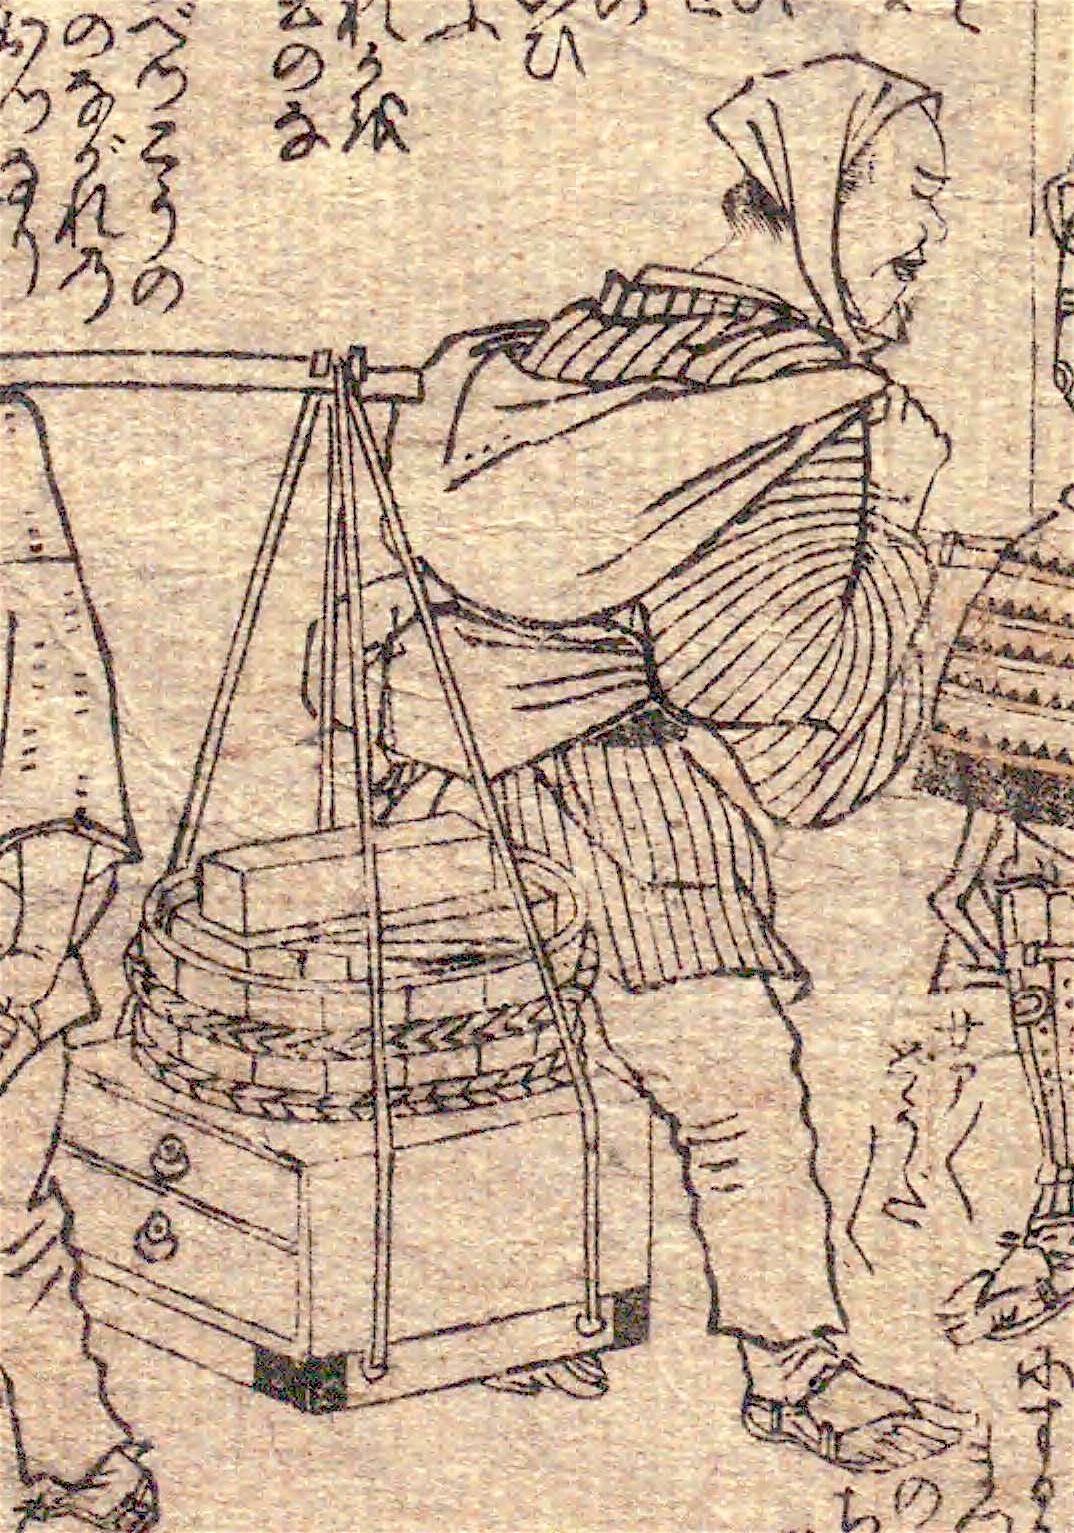 Comprador ambulante de cera de palmatorias en el libro Hyakkoi Kumitate Seisuiki. (Colección de la Biblioteca Nacional de la Dieta)